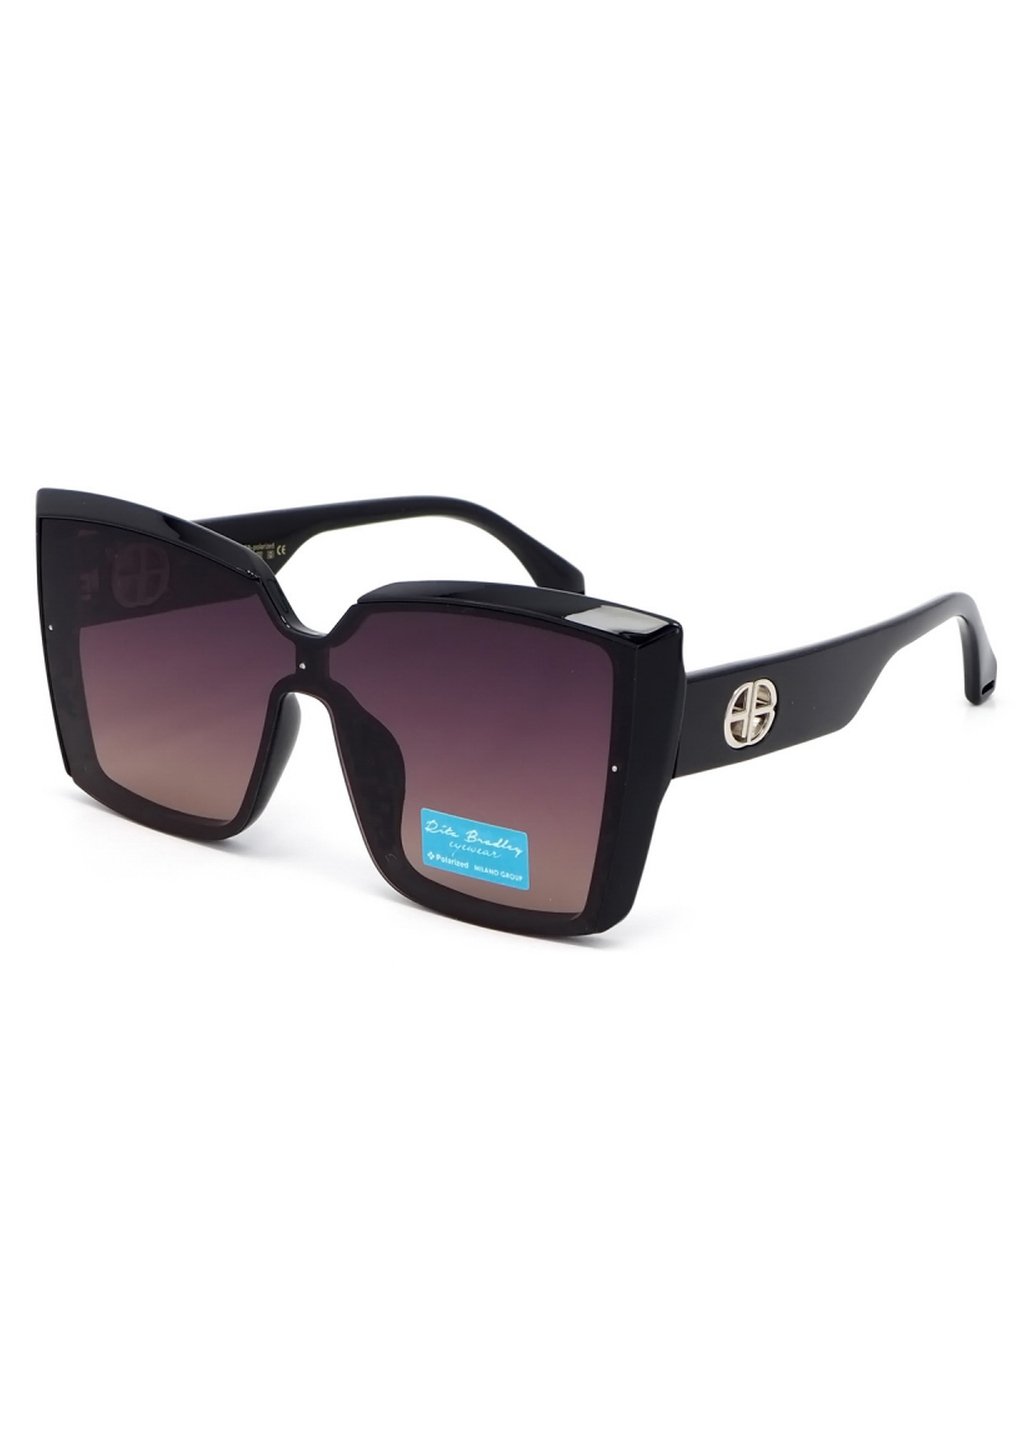 Купить Женские солнцезащитные очки Rita Bradley с поляризацией RB725 112051 в интернет-магазине